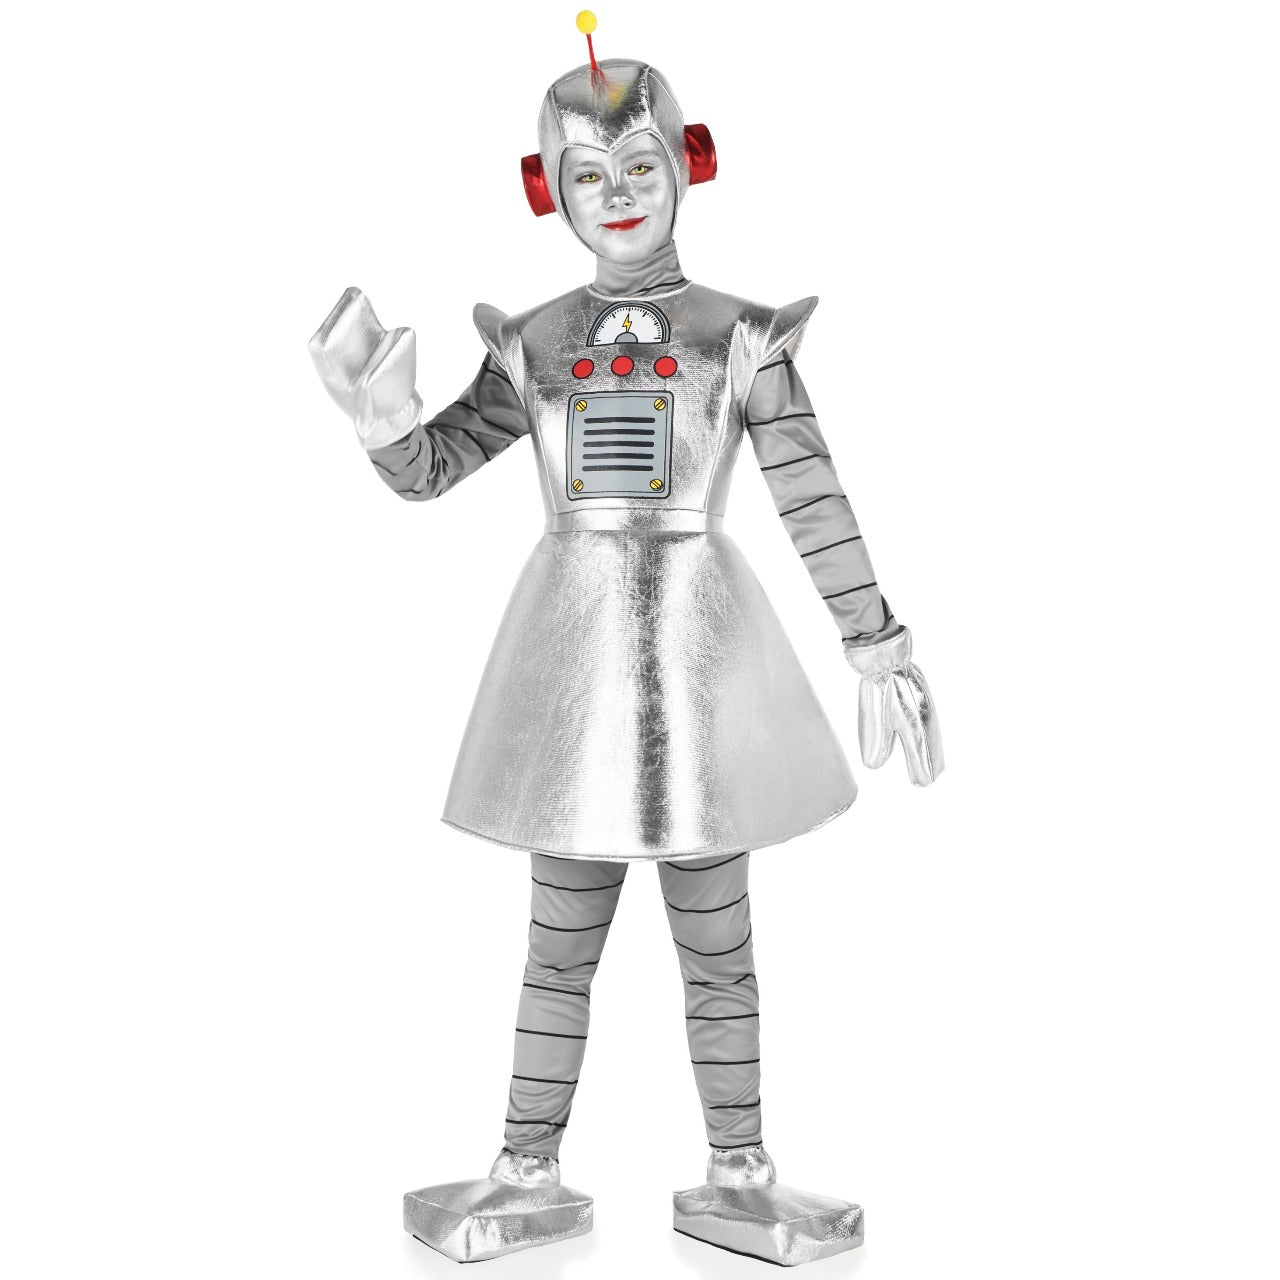 Acquista online il costume Robot Tea infantile